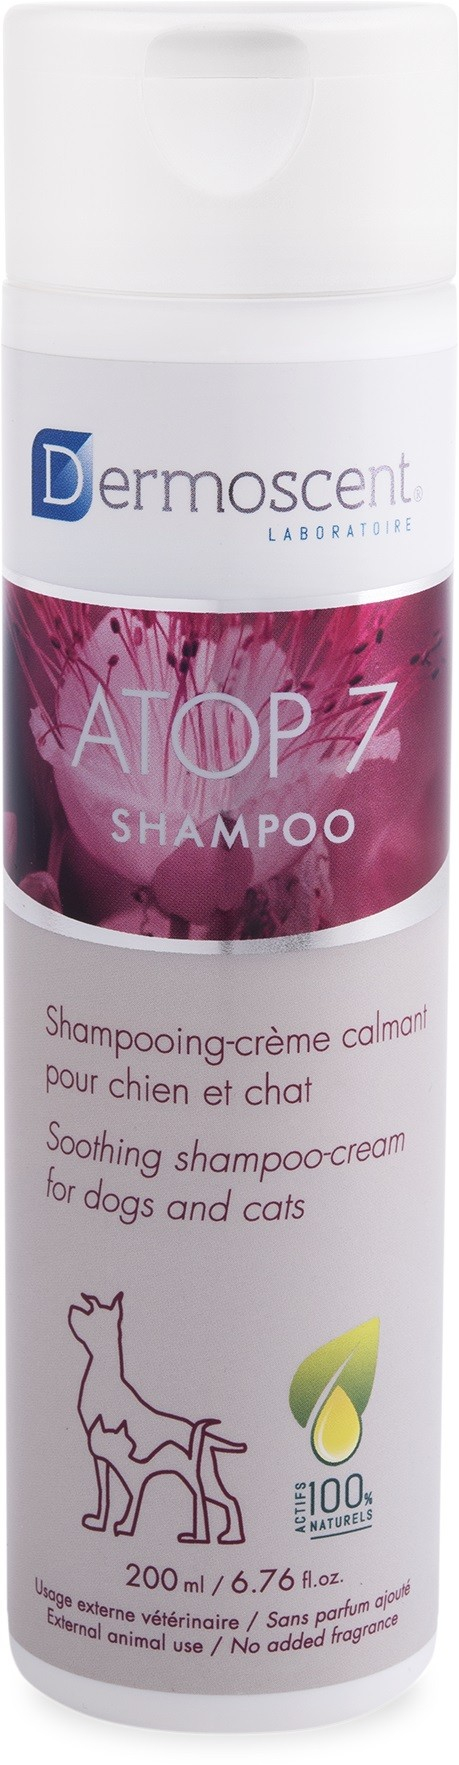 Dermoscent Atop 7 Shampoo-crema calmante